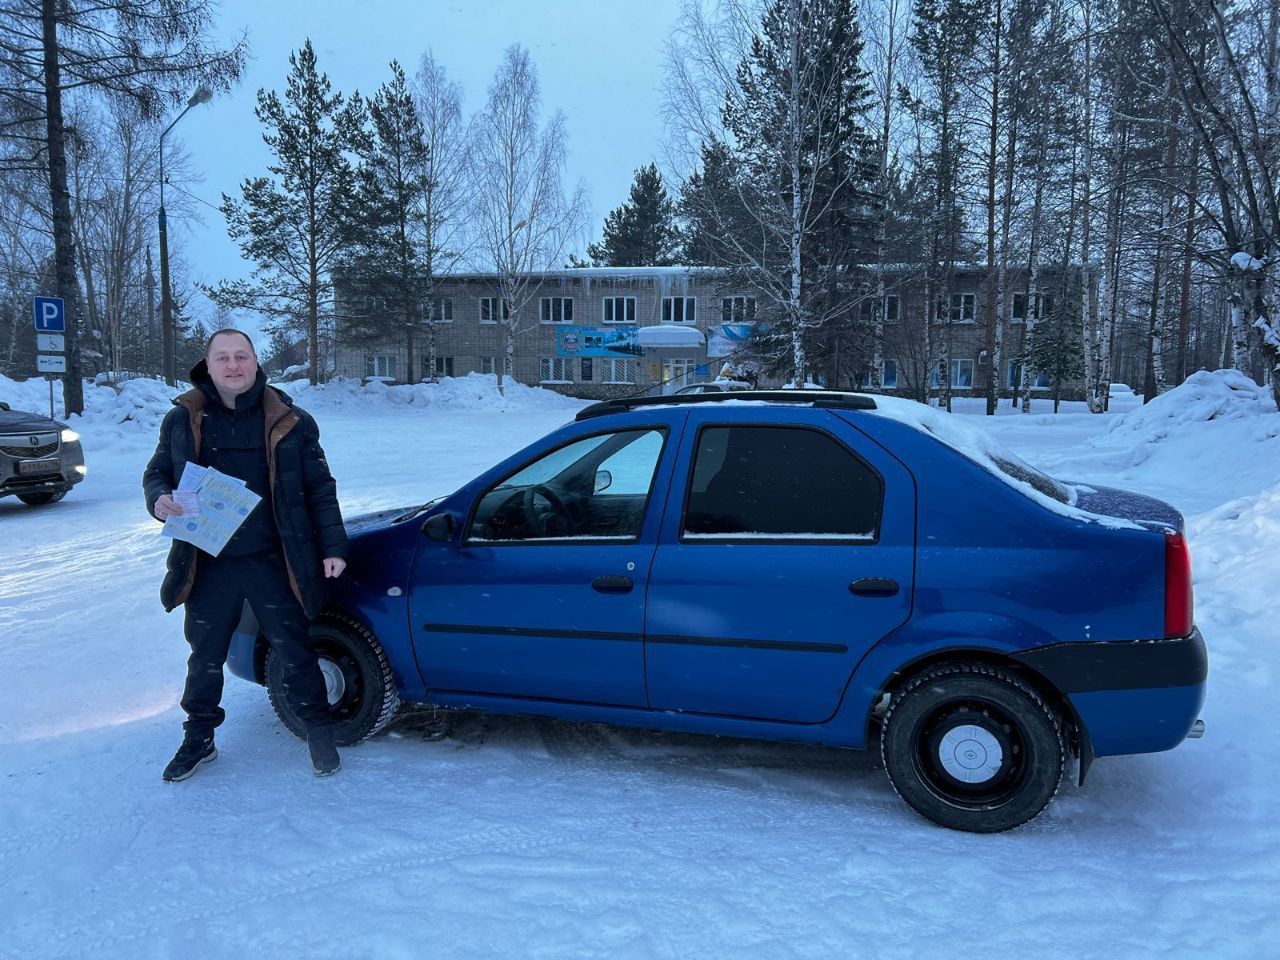 "Автомобиль был чист". Серовский предприниматель 3 года снимал с машины арест, незаконно наложенный приставами